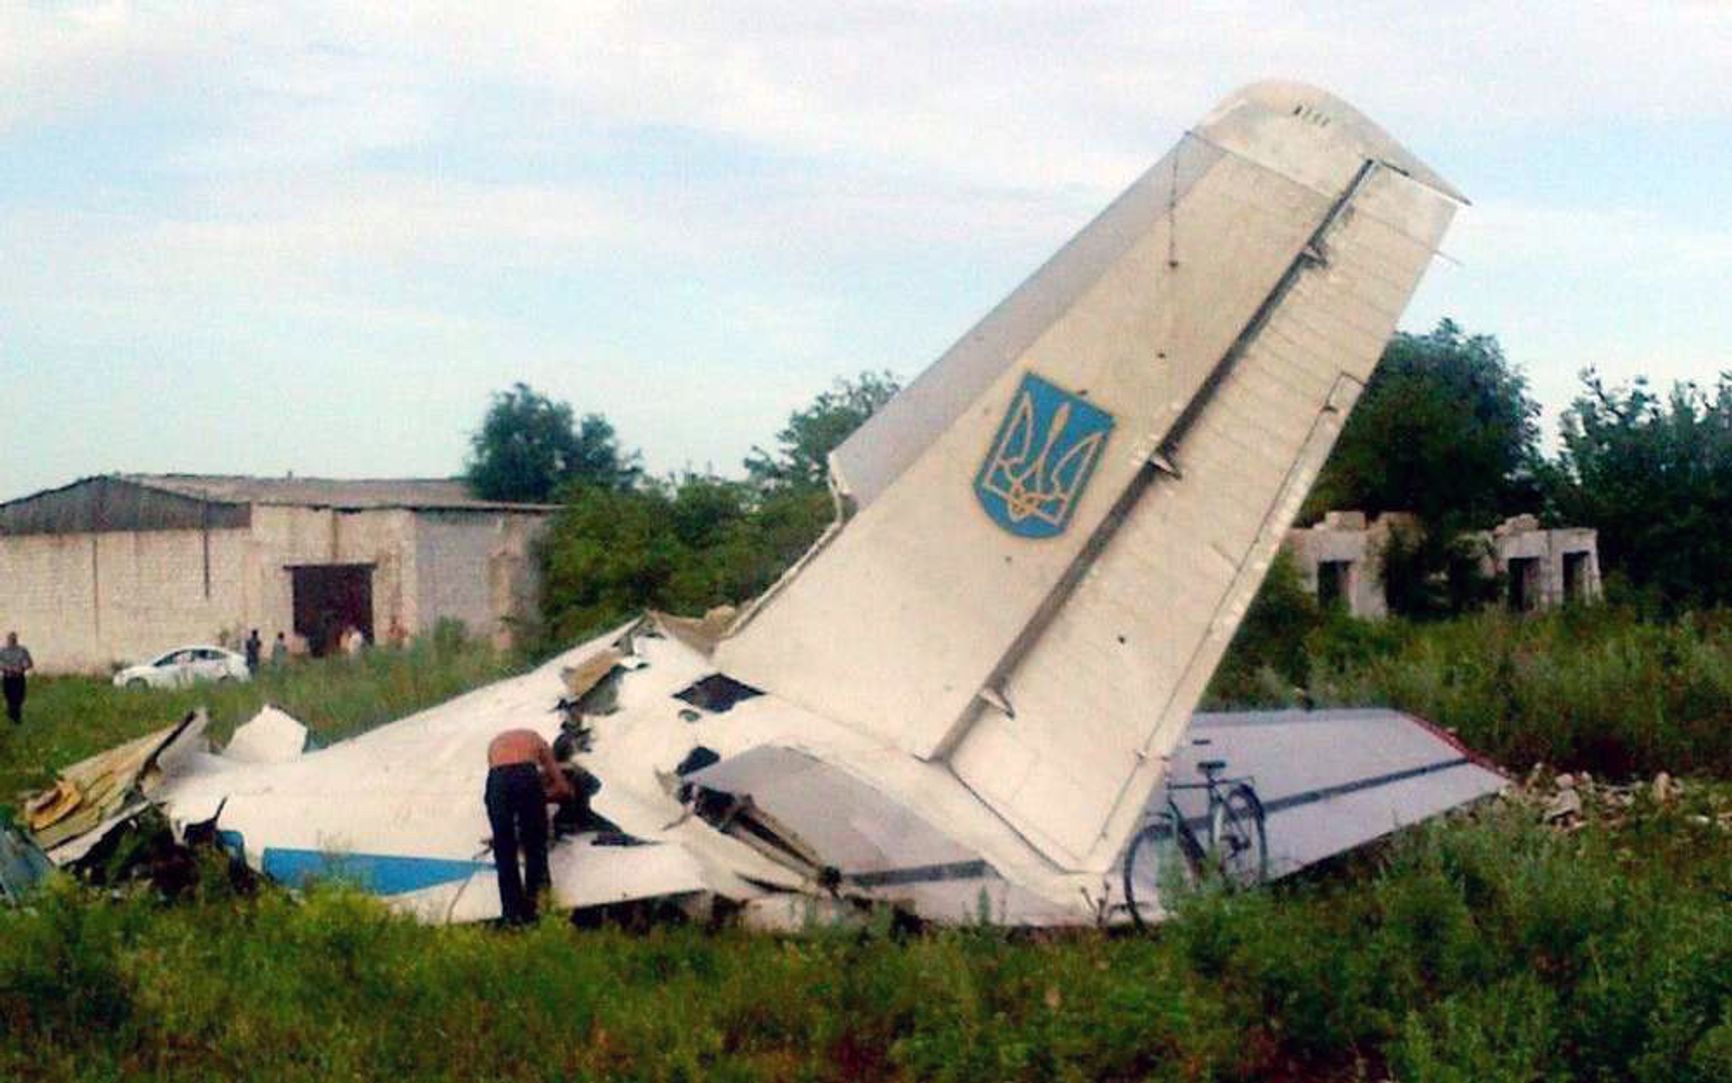 Обломки украинского Ан-26, сбитого 14 июля 2014 года. Самолет принадлежал 456-й транспортной авиабригаде (в/ч А-1231), с базированием в Гавришовке под Винницей. Из восьми находившихся на борту самолета членов экипажа два погибли, два попали в плен, и четыре благополучно добрались до безопасного района